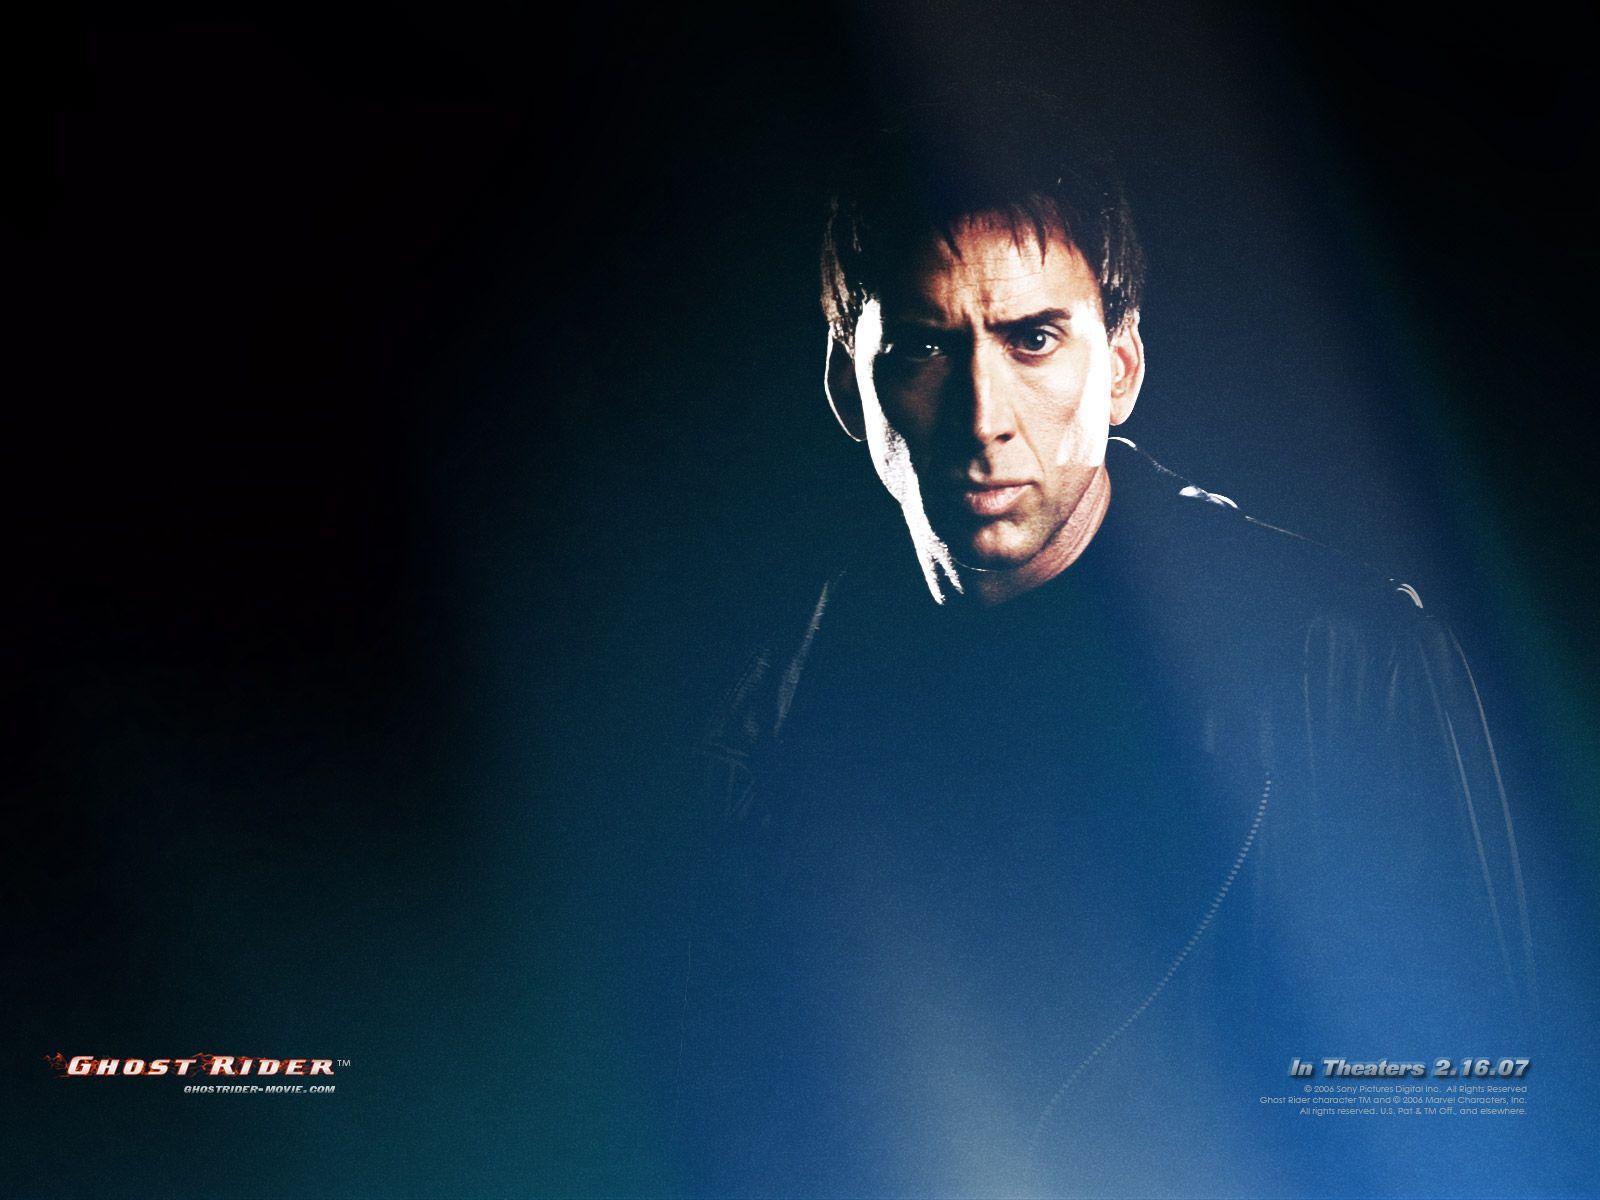 Nicolas Cage Wallpaper. HD Wallpaper Base